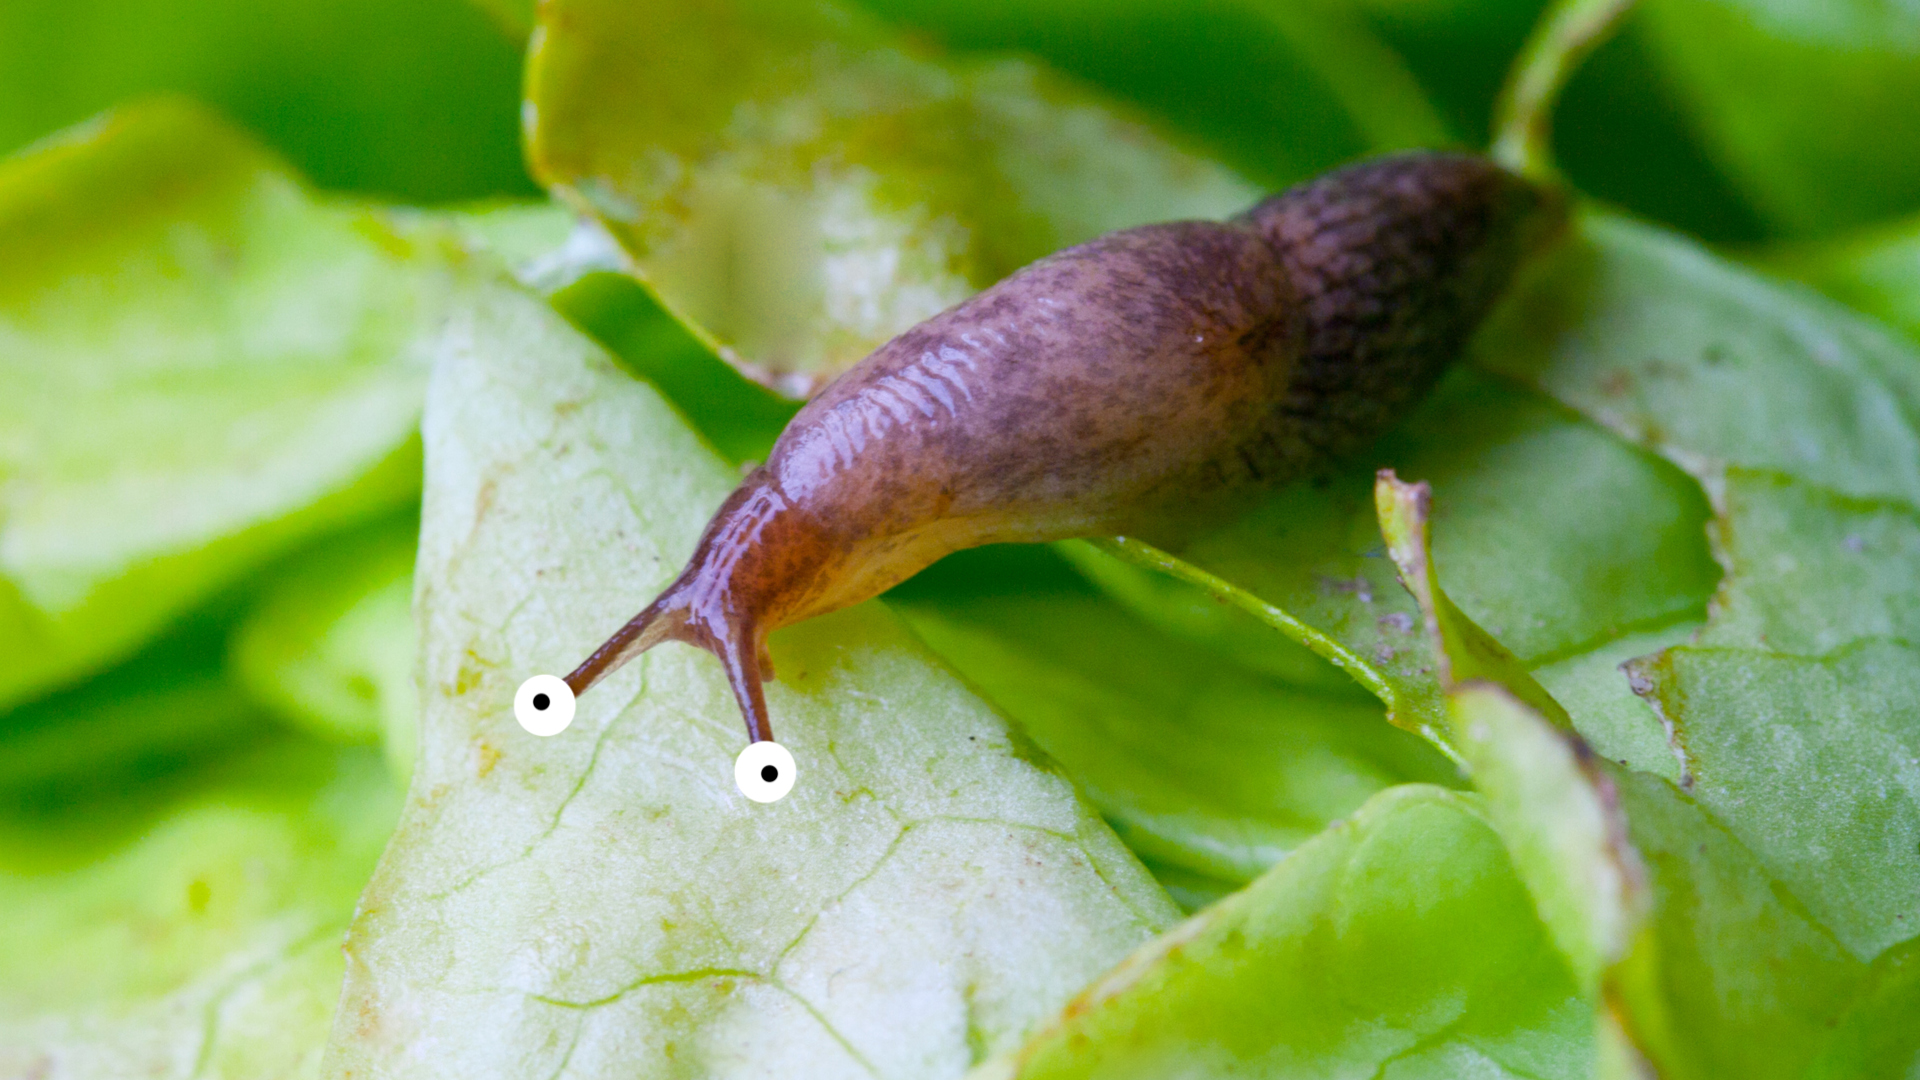 A slug on a leaf